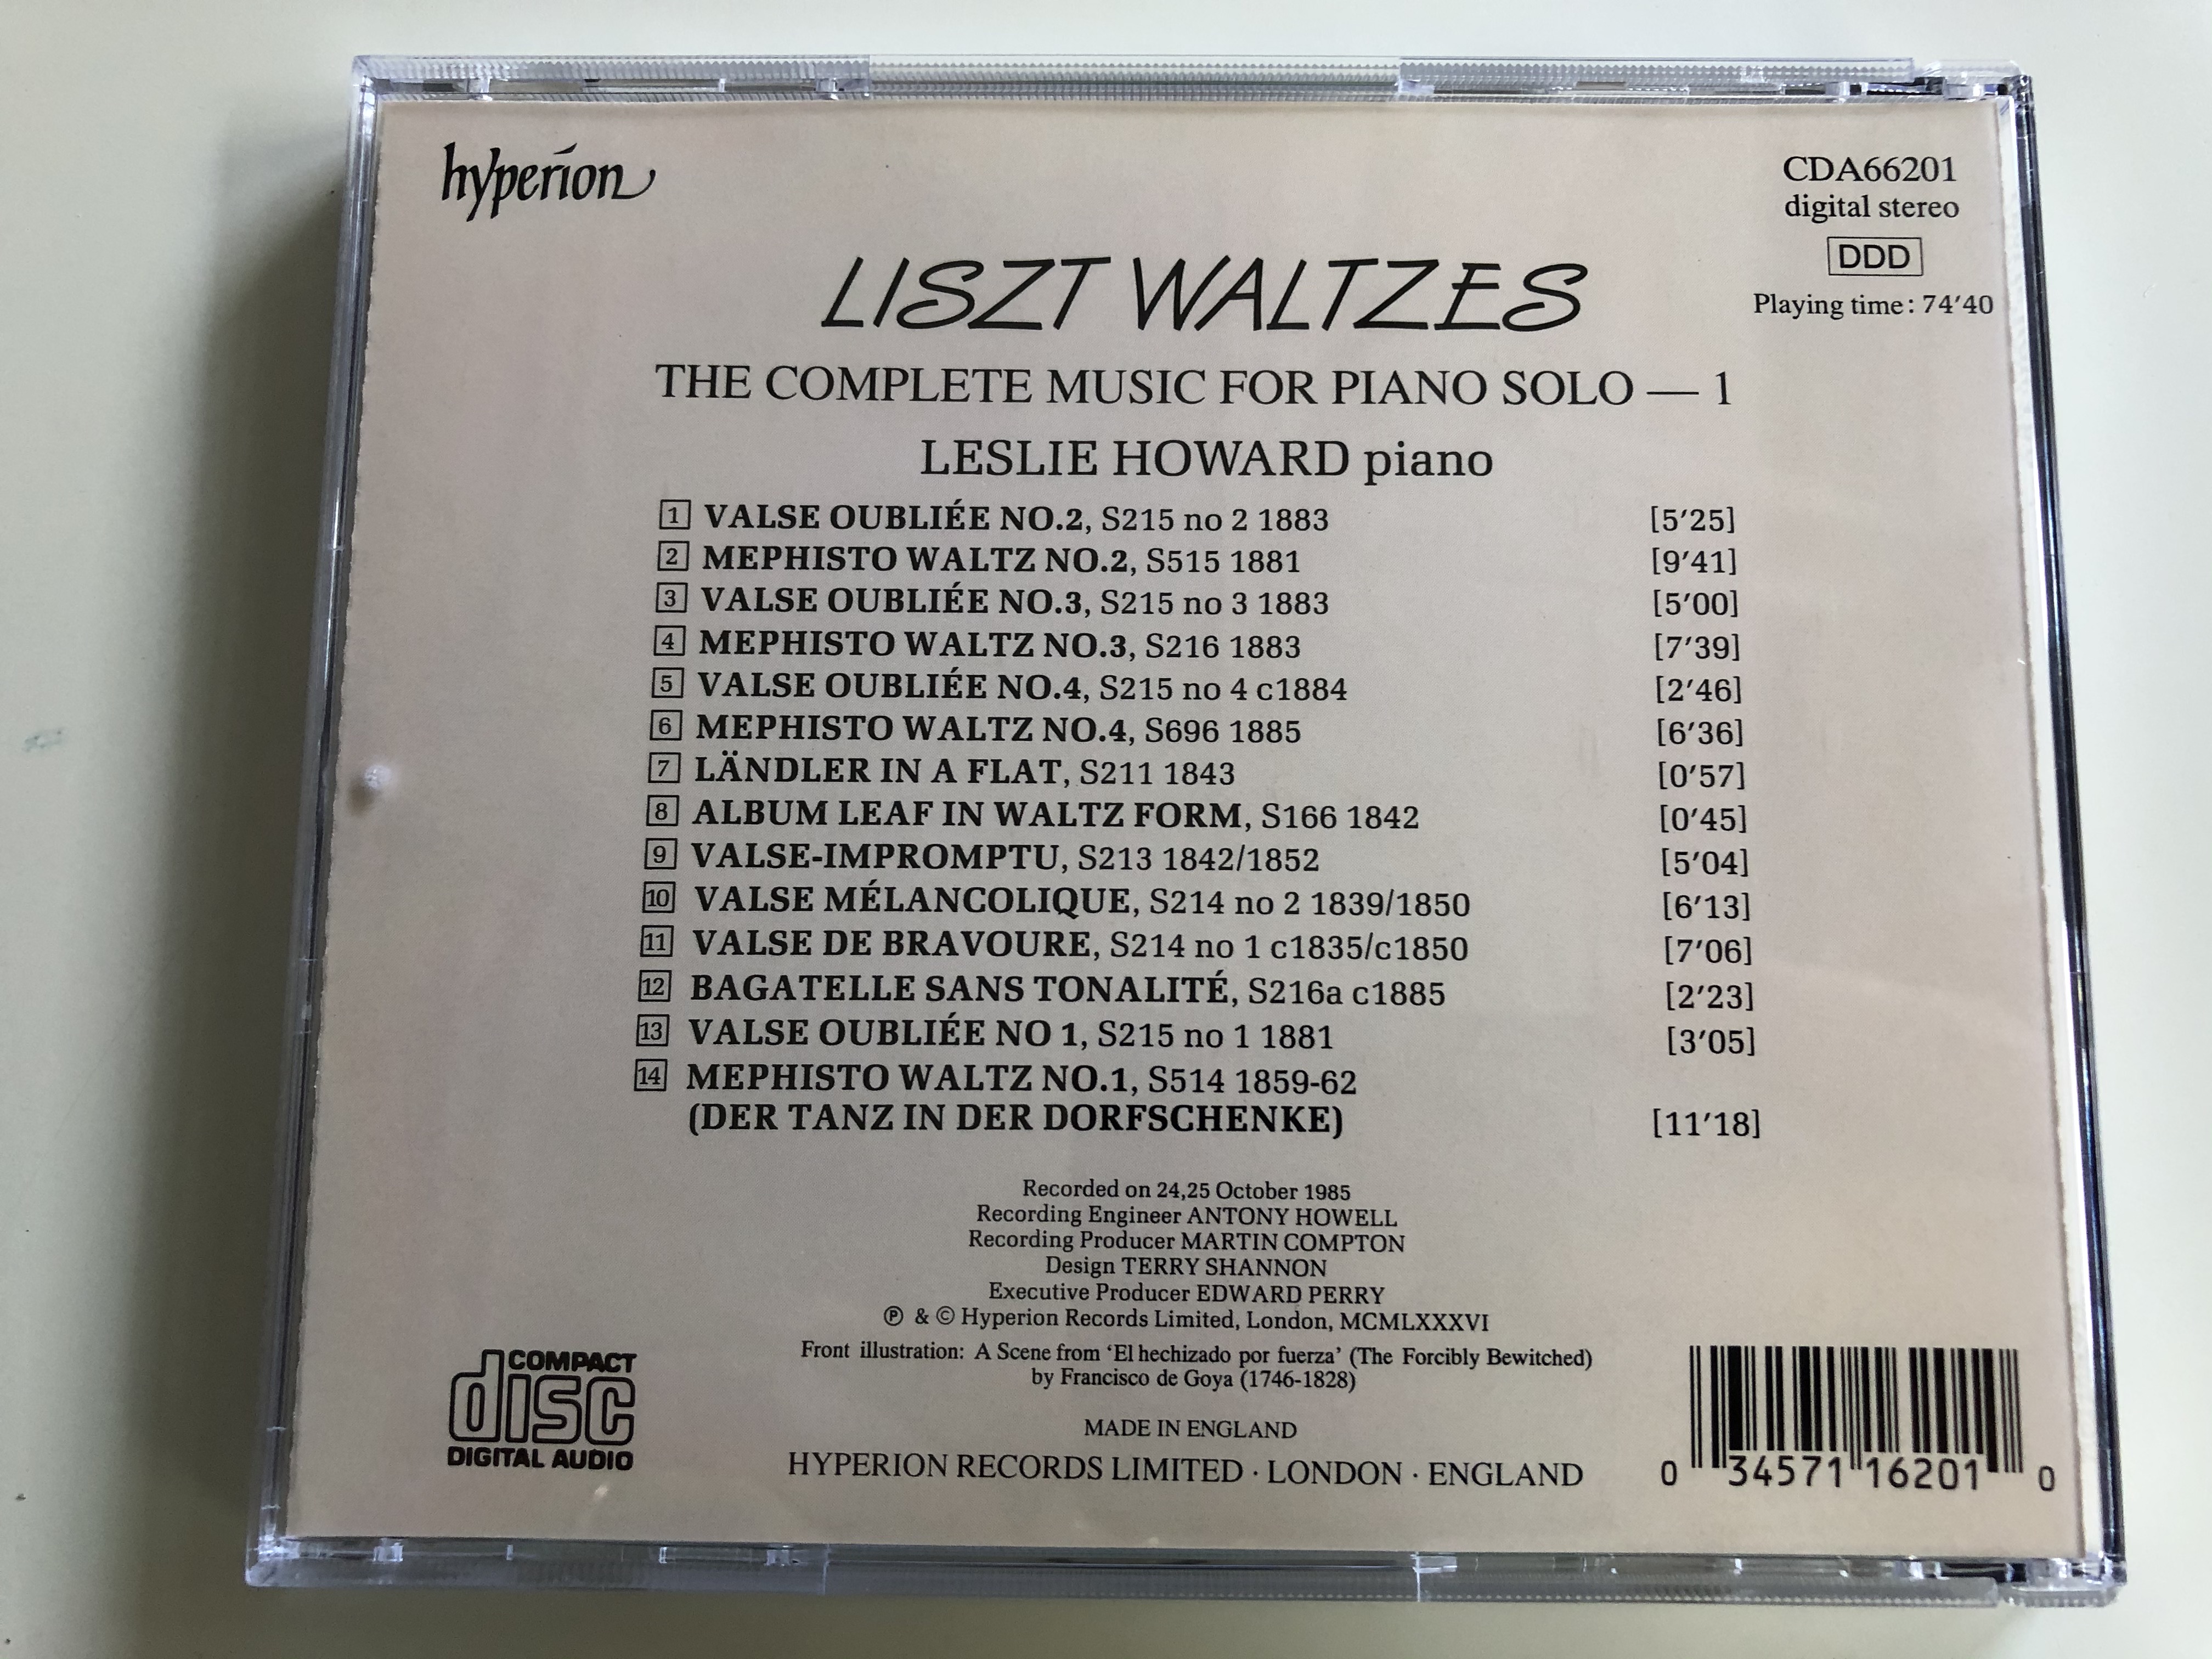 liszt-waltzes-leslie-howard-hyperion-audio-cd-1986-stereo-cda66201-6-.jpg